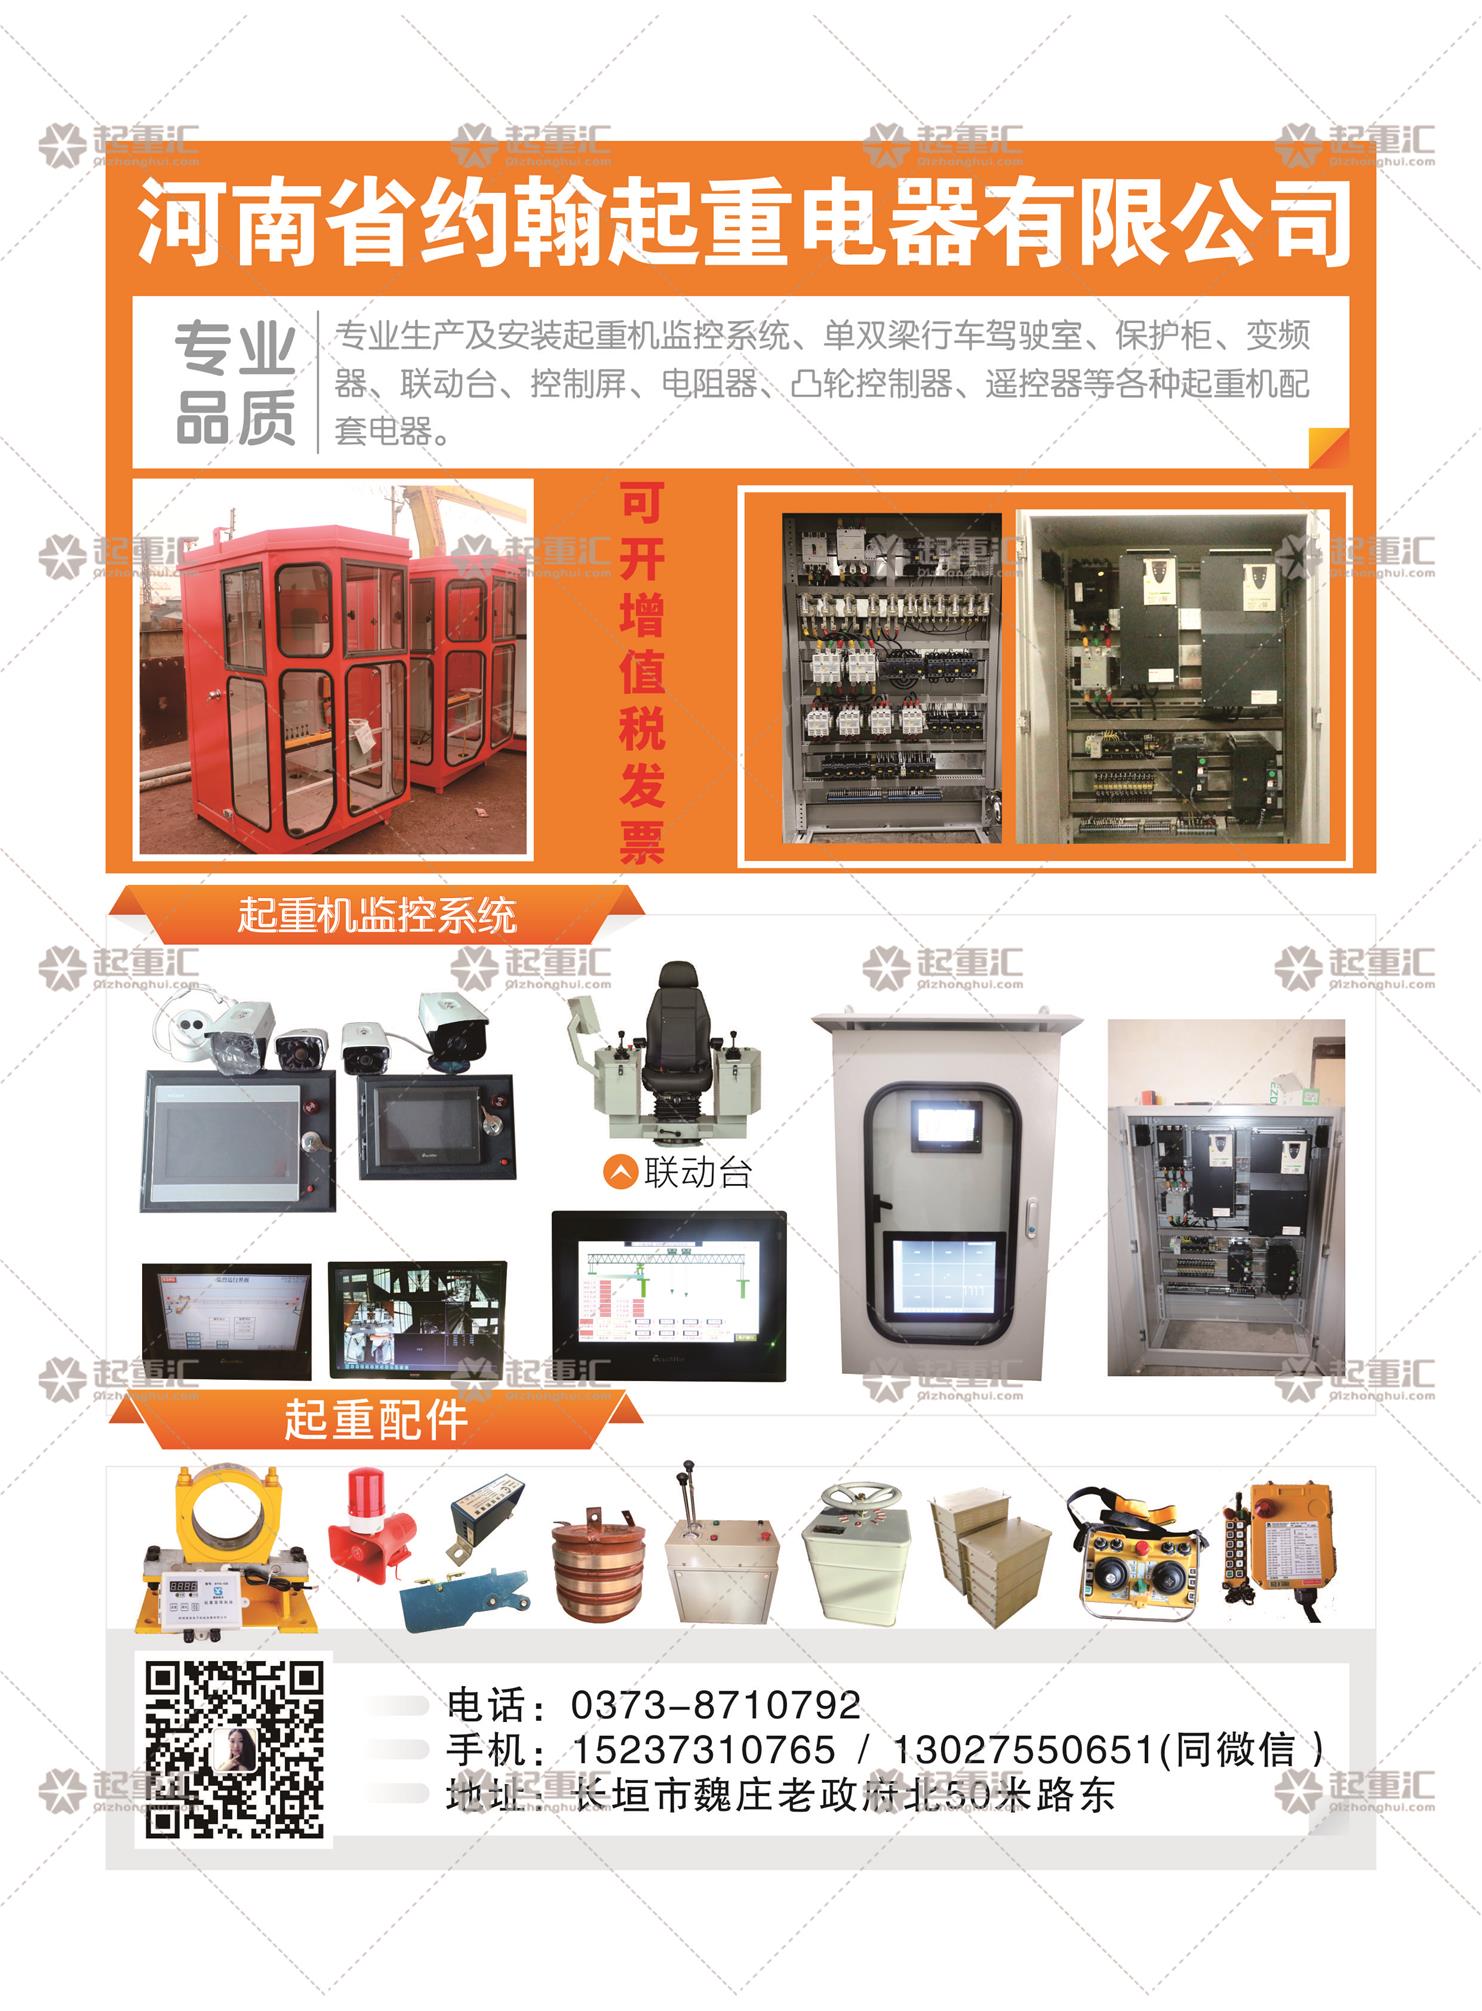 河南省约翰起重电器有限公司已加入《起重汇采购指南》！